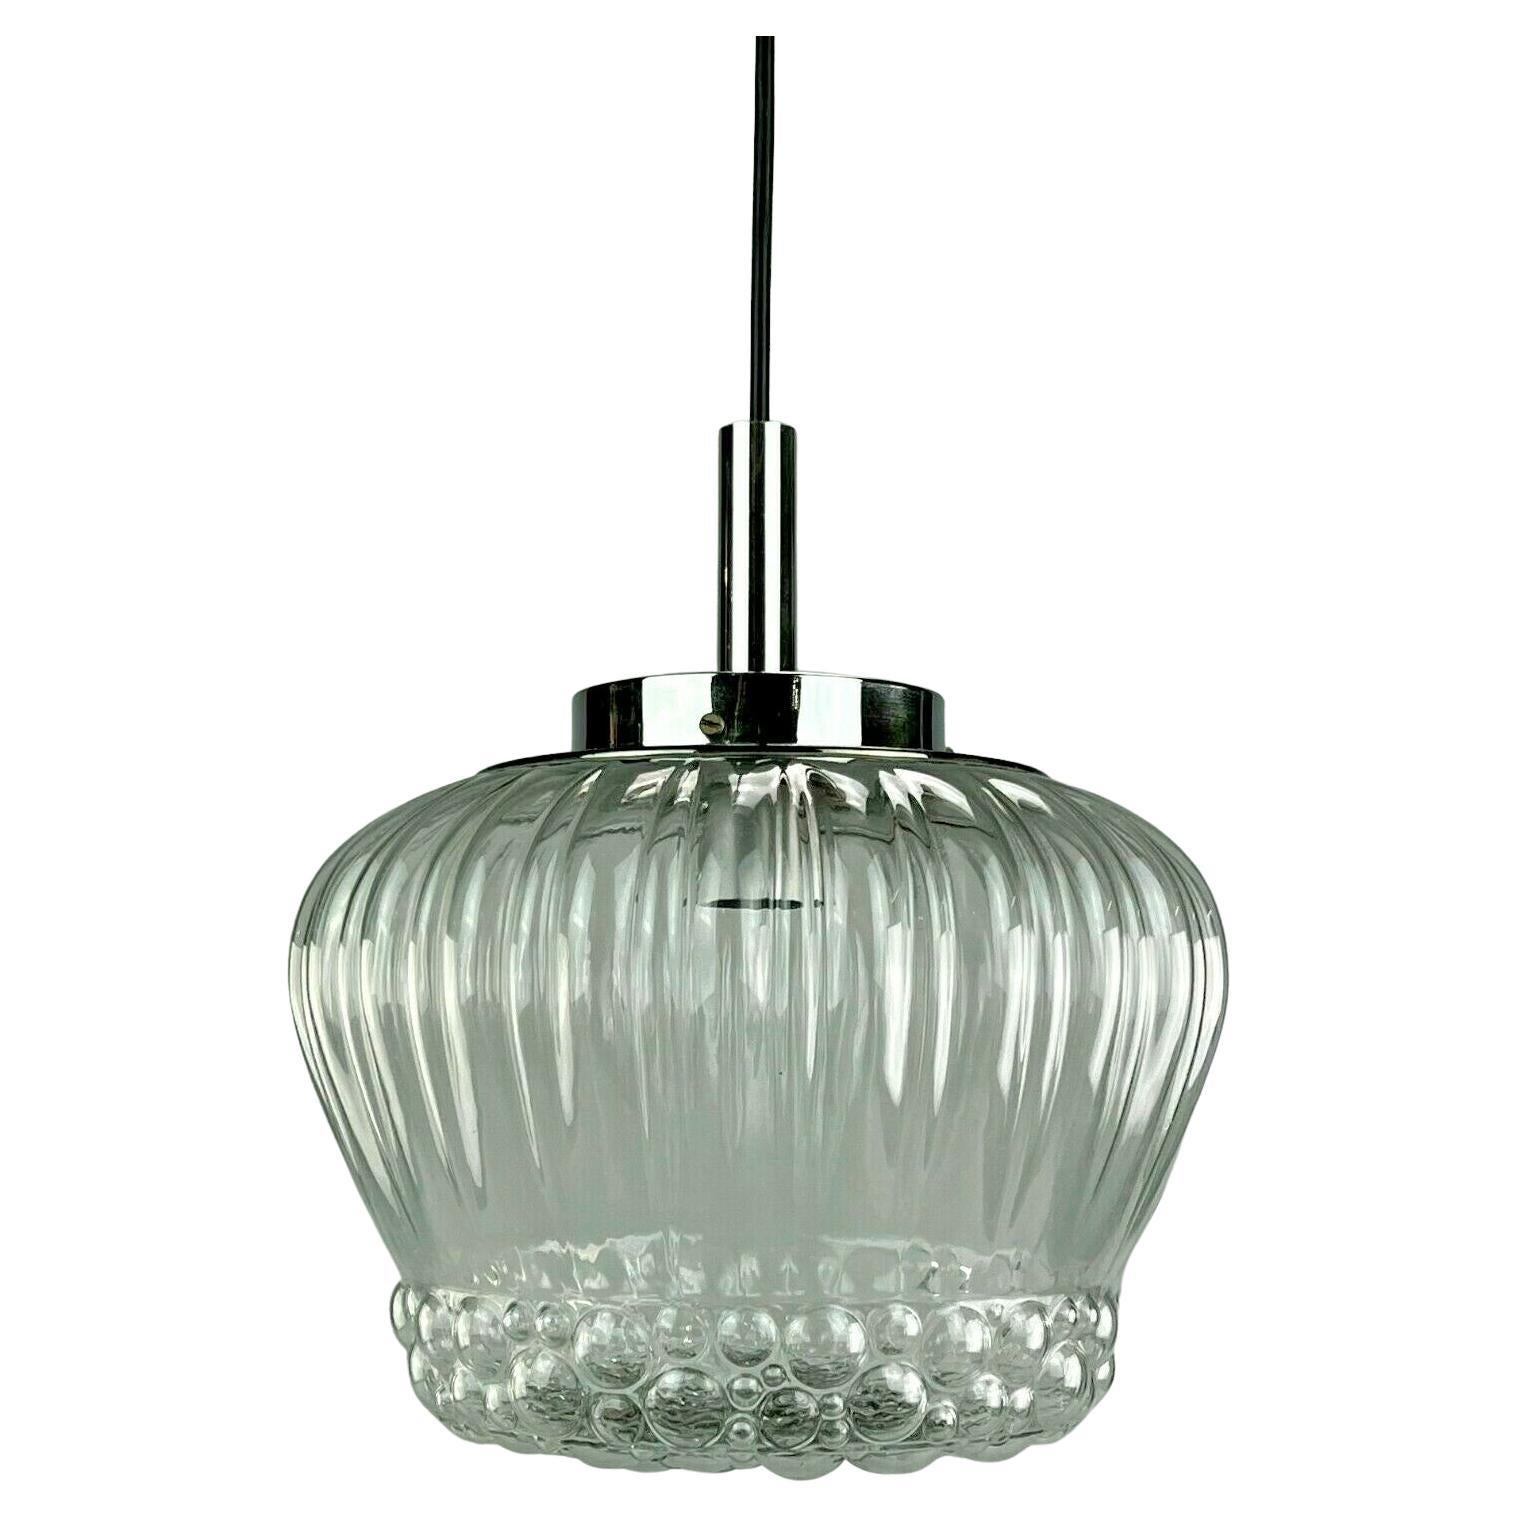 60er-Jahre-Lampe, Hängeleuchte, Kugellampe, Blase, Chrom, Glas, Space Age Design